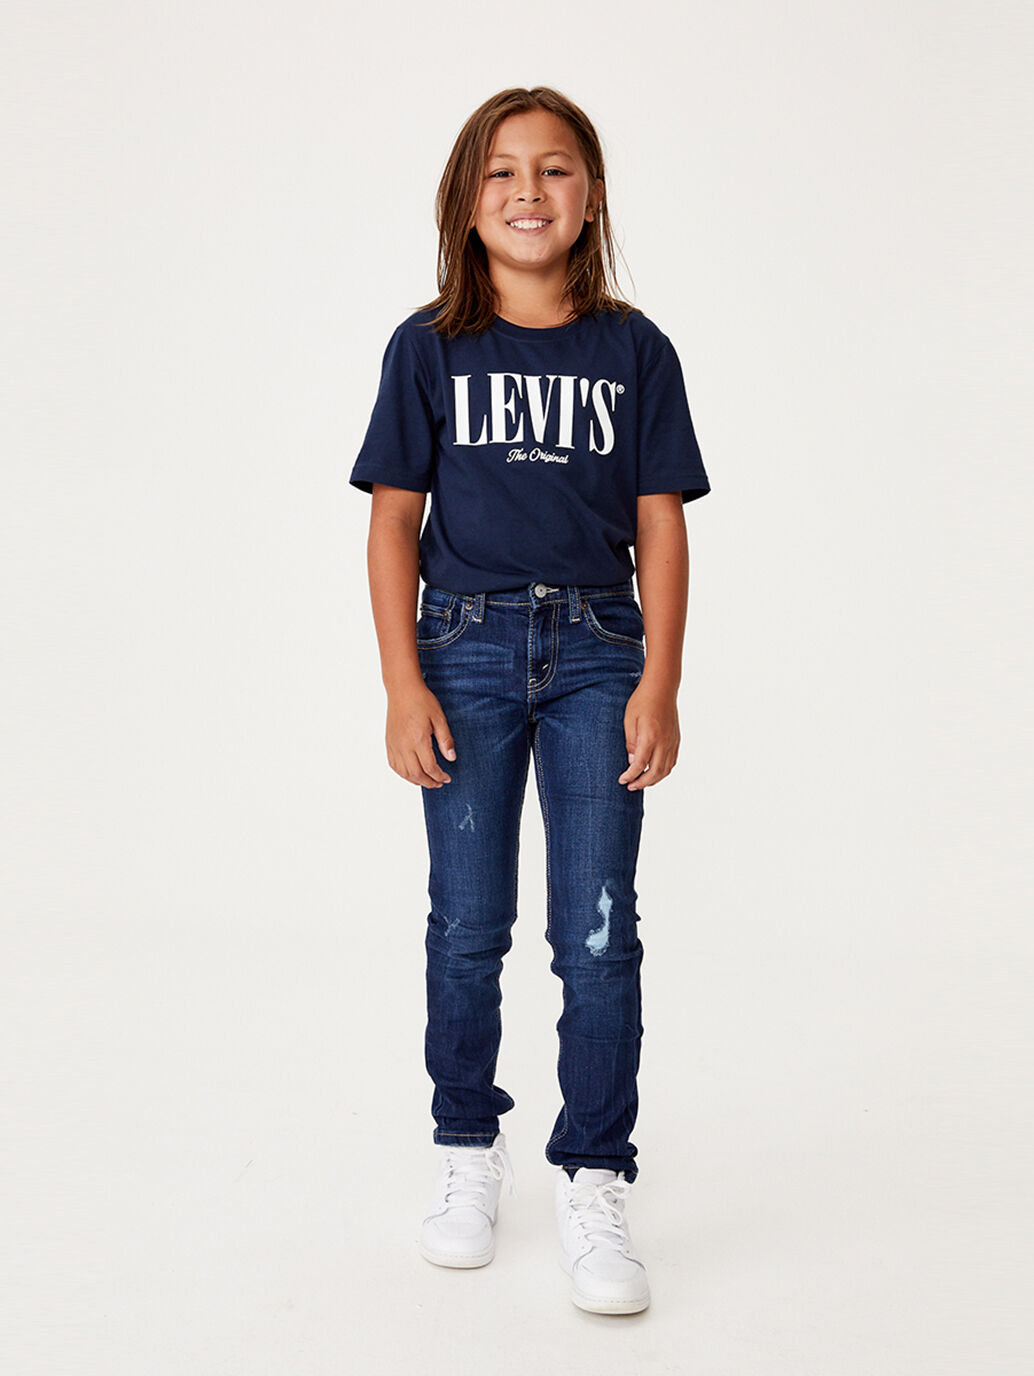 levi's kidswear australia